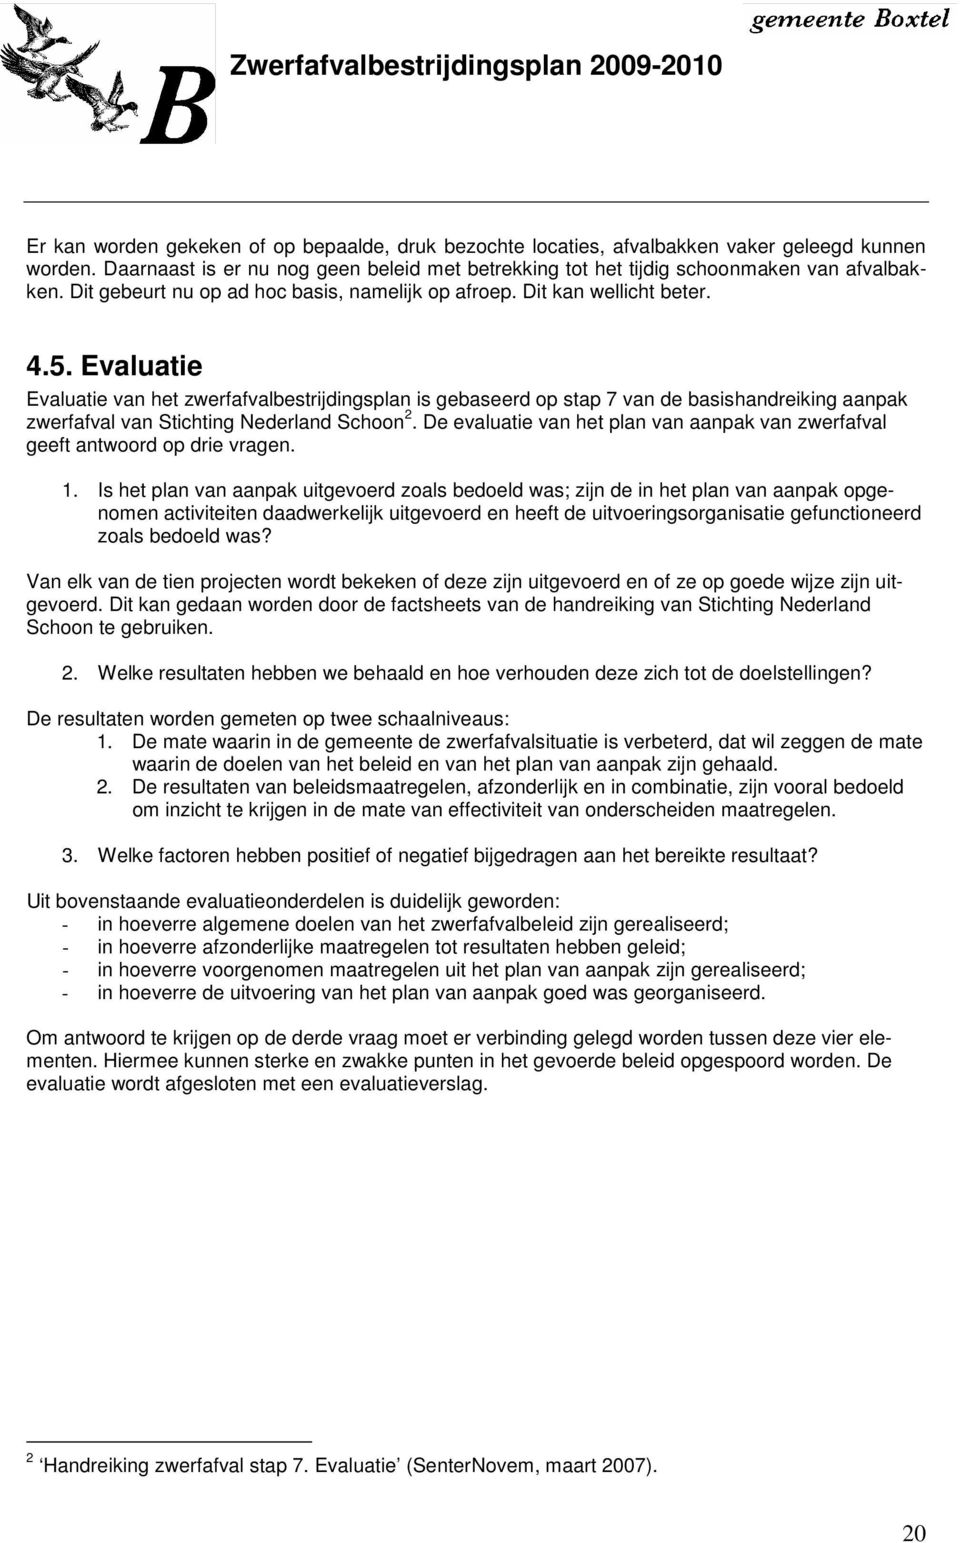 Evaluatie Evaluatie van het zwerfafvalbestrijdingsplan is gebaseerd op stap 7 van de basishandreiking aanpak zwerfafval van Stichting Nederland Schoon 2.